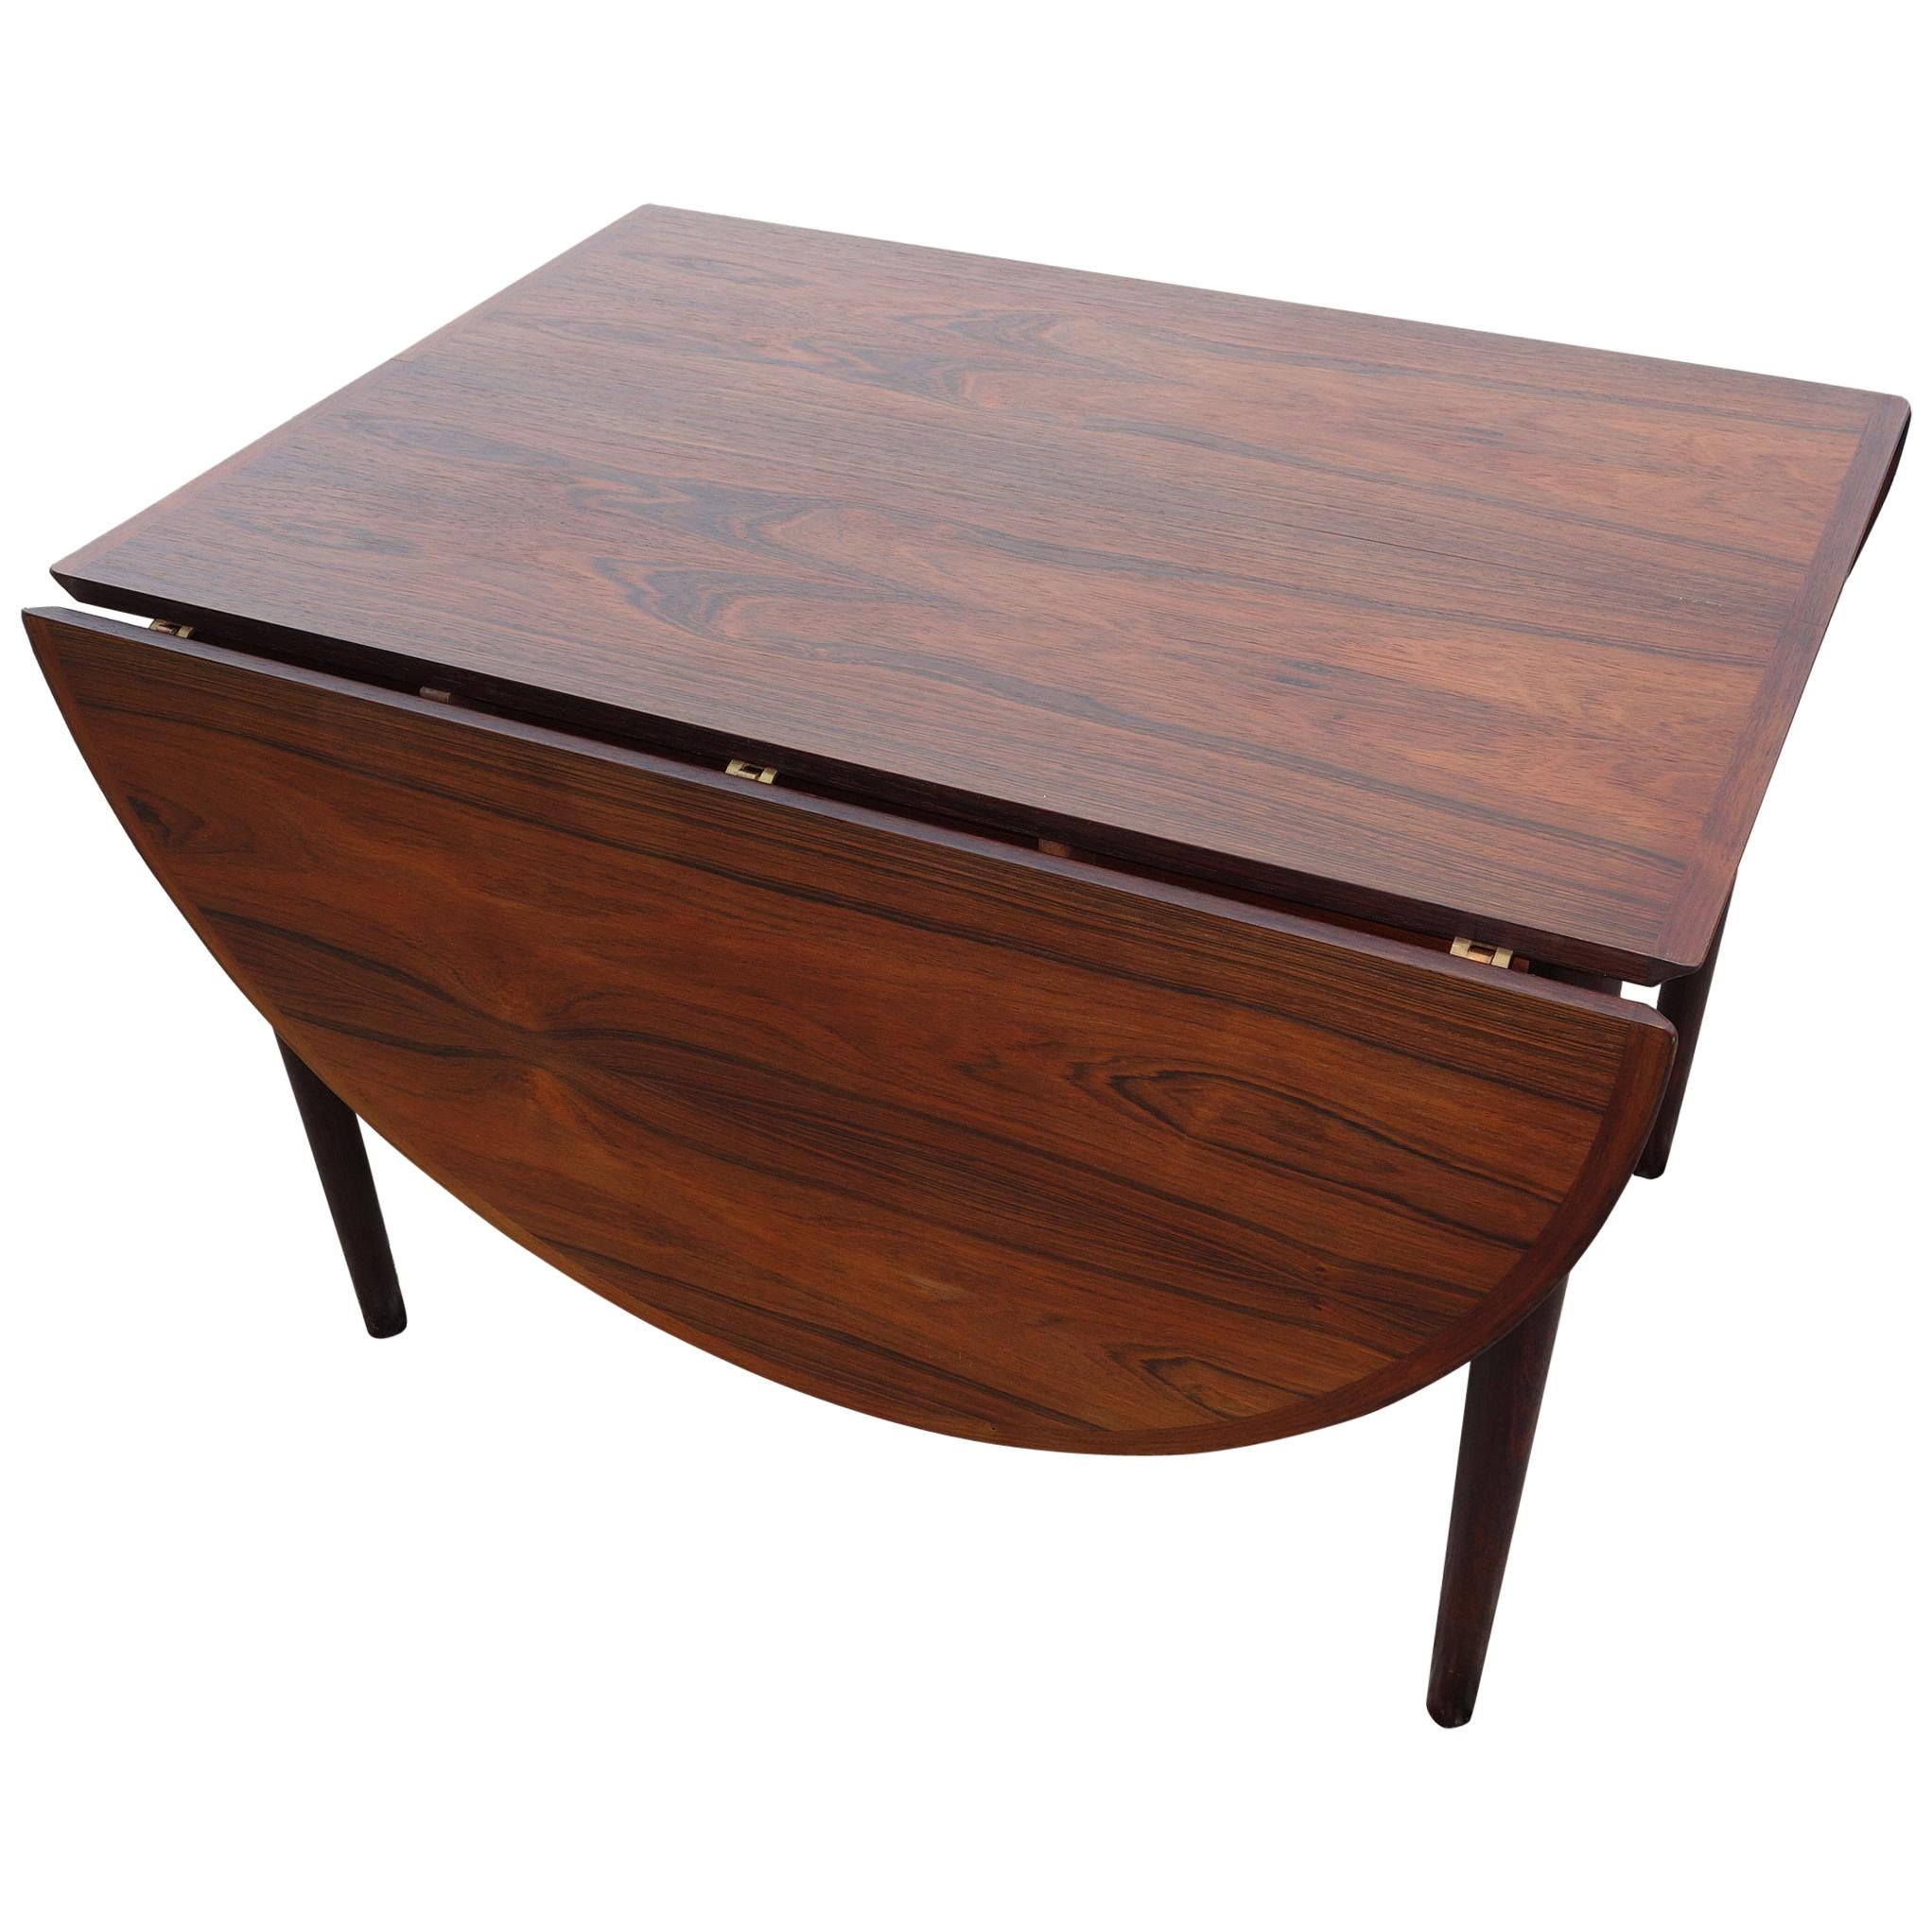 Arne Vodder Drop Leaf Table in Rosewood Made by Sibast Furniture Model 227 For Sale